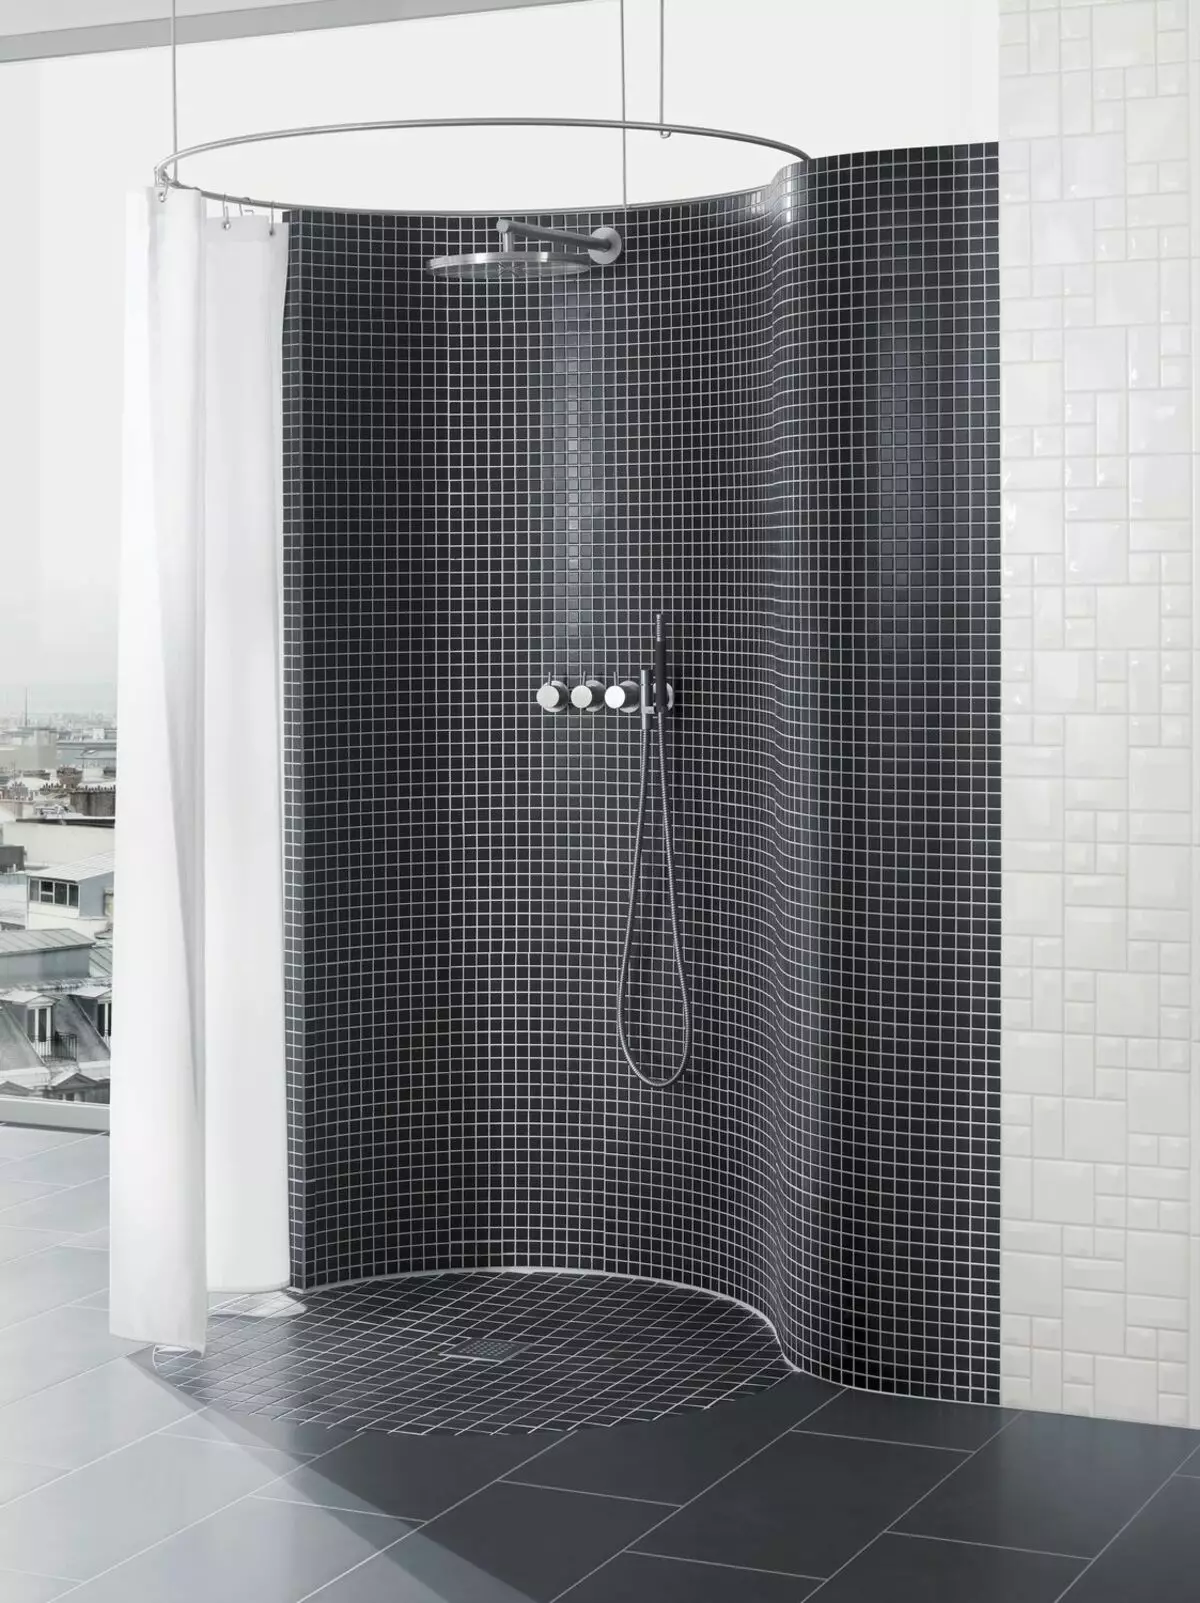 Cabinas abiertas de ducha: sin techo y paleta baja de 90x90 cm, modelos angulares, tamaños 100x100 y 120x80 cm, otros modelos para el baño 10334_45